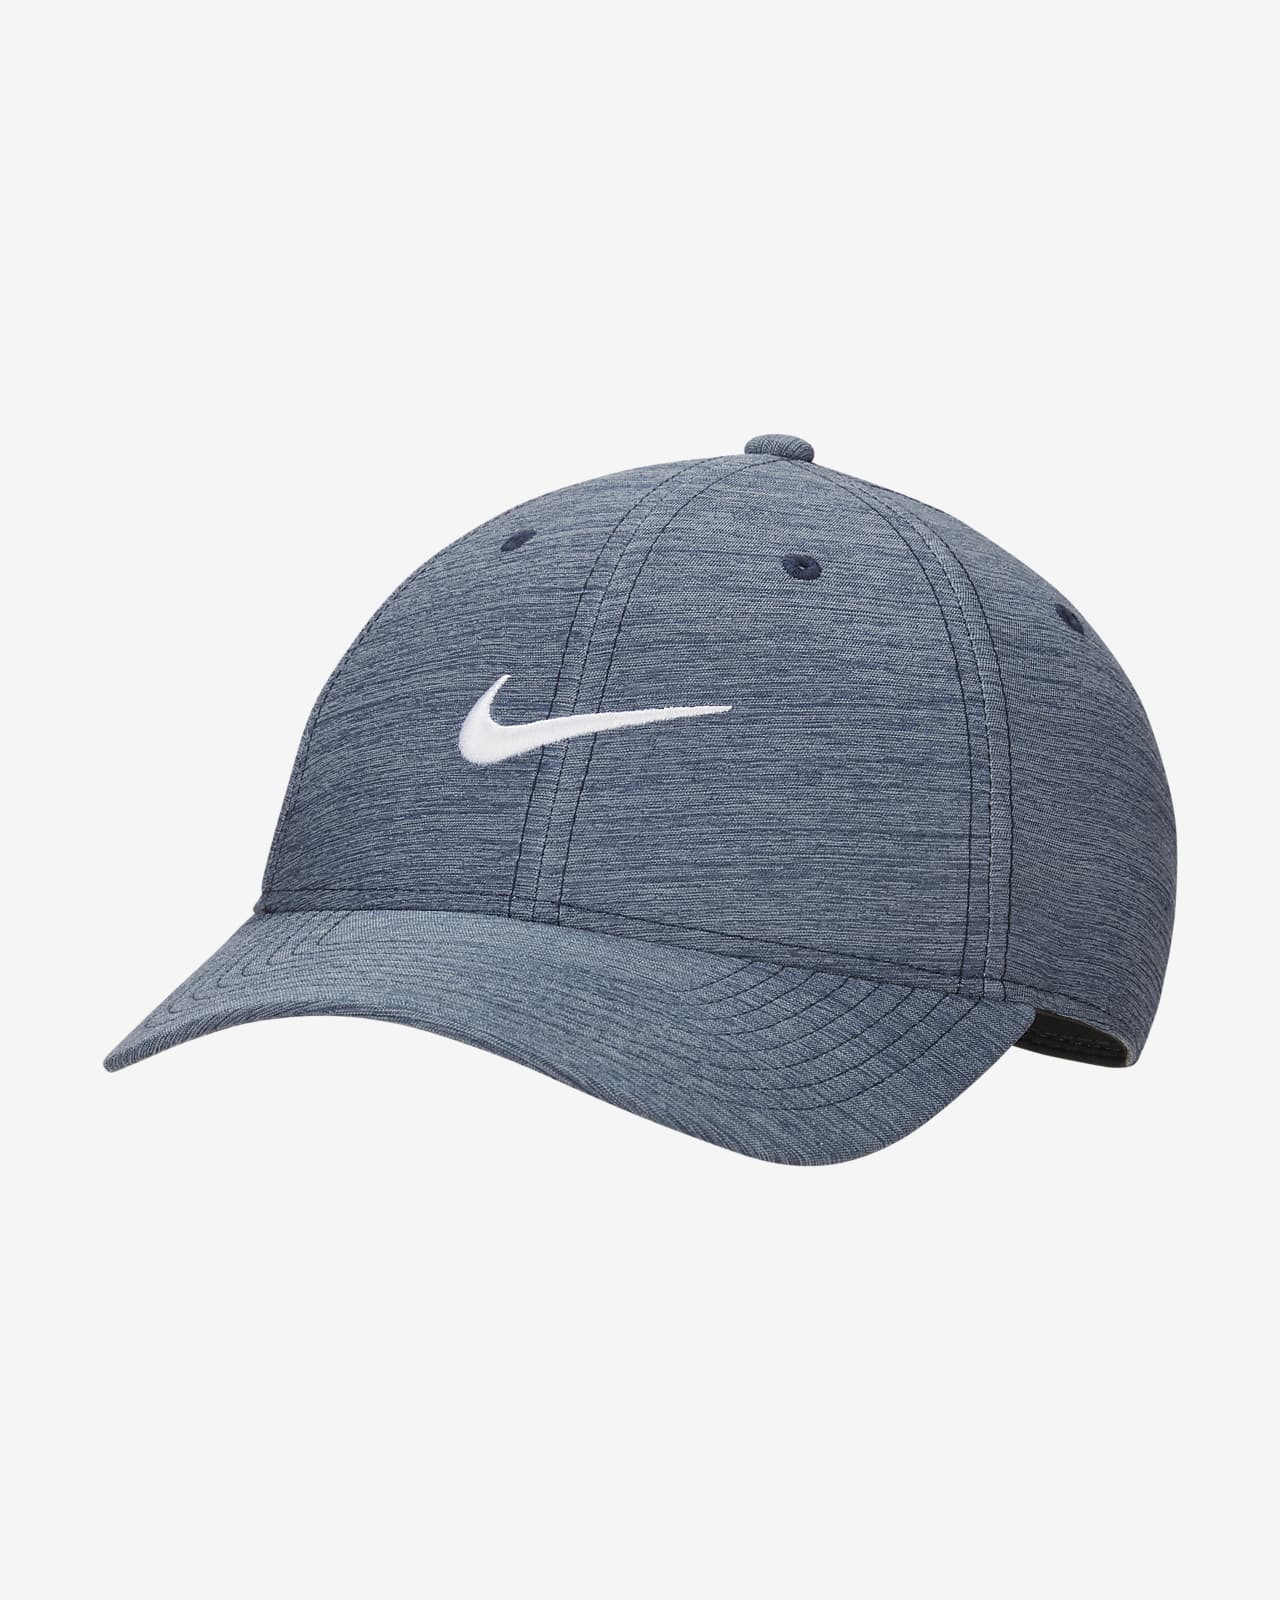 Nike Legacy91 高爾夫帽